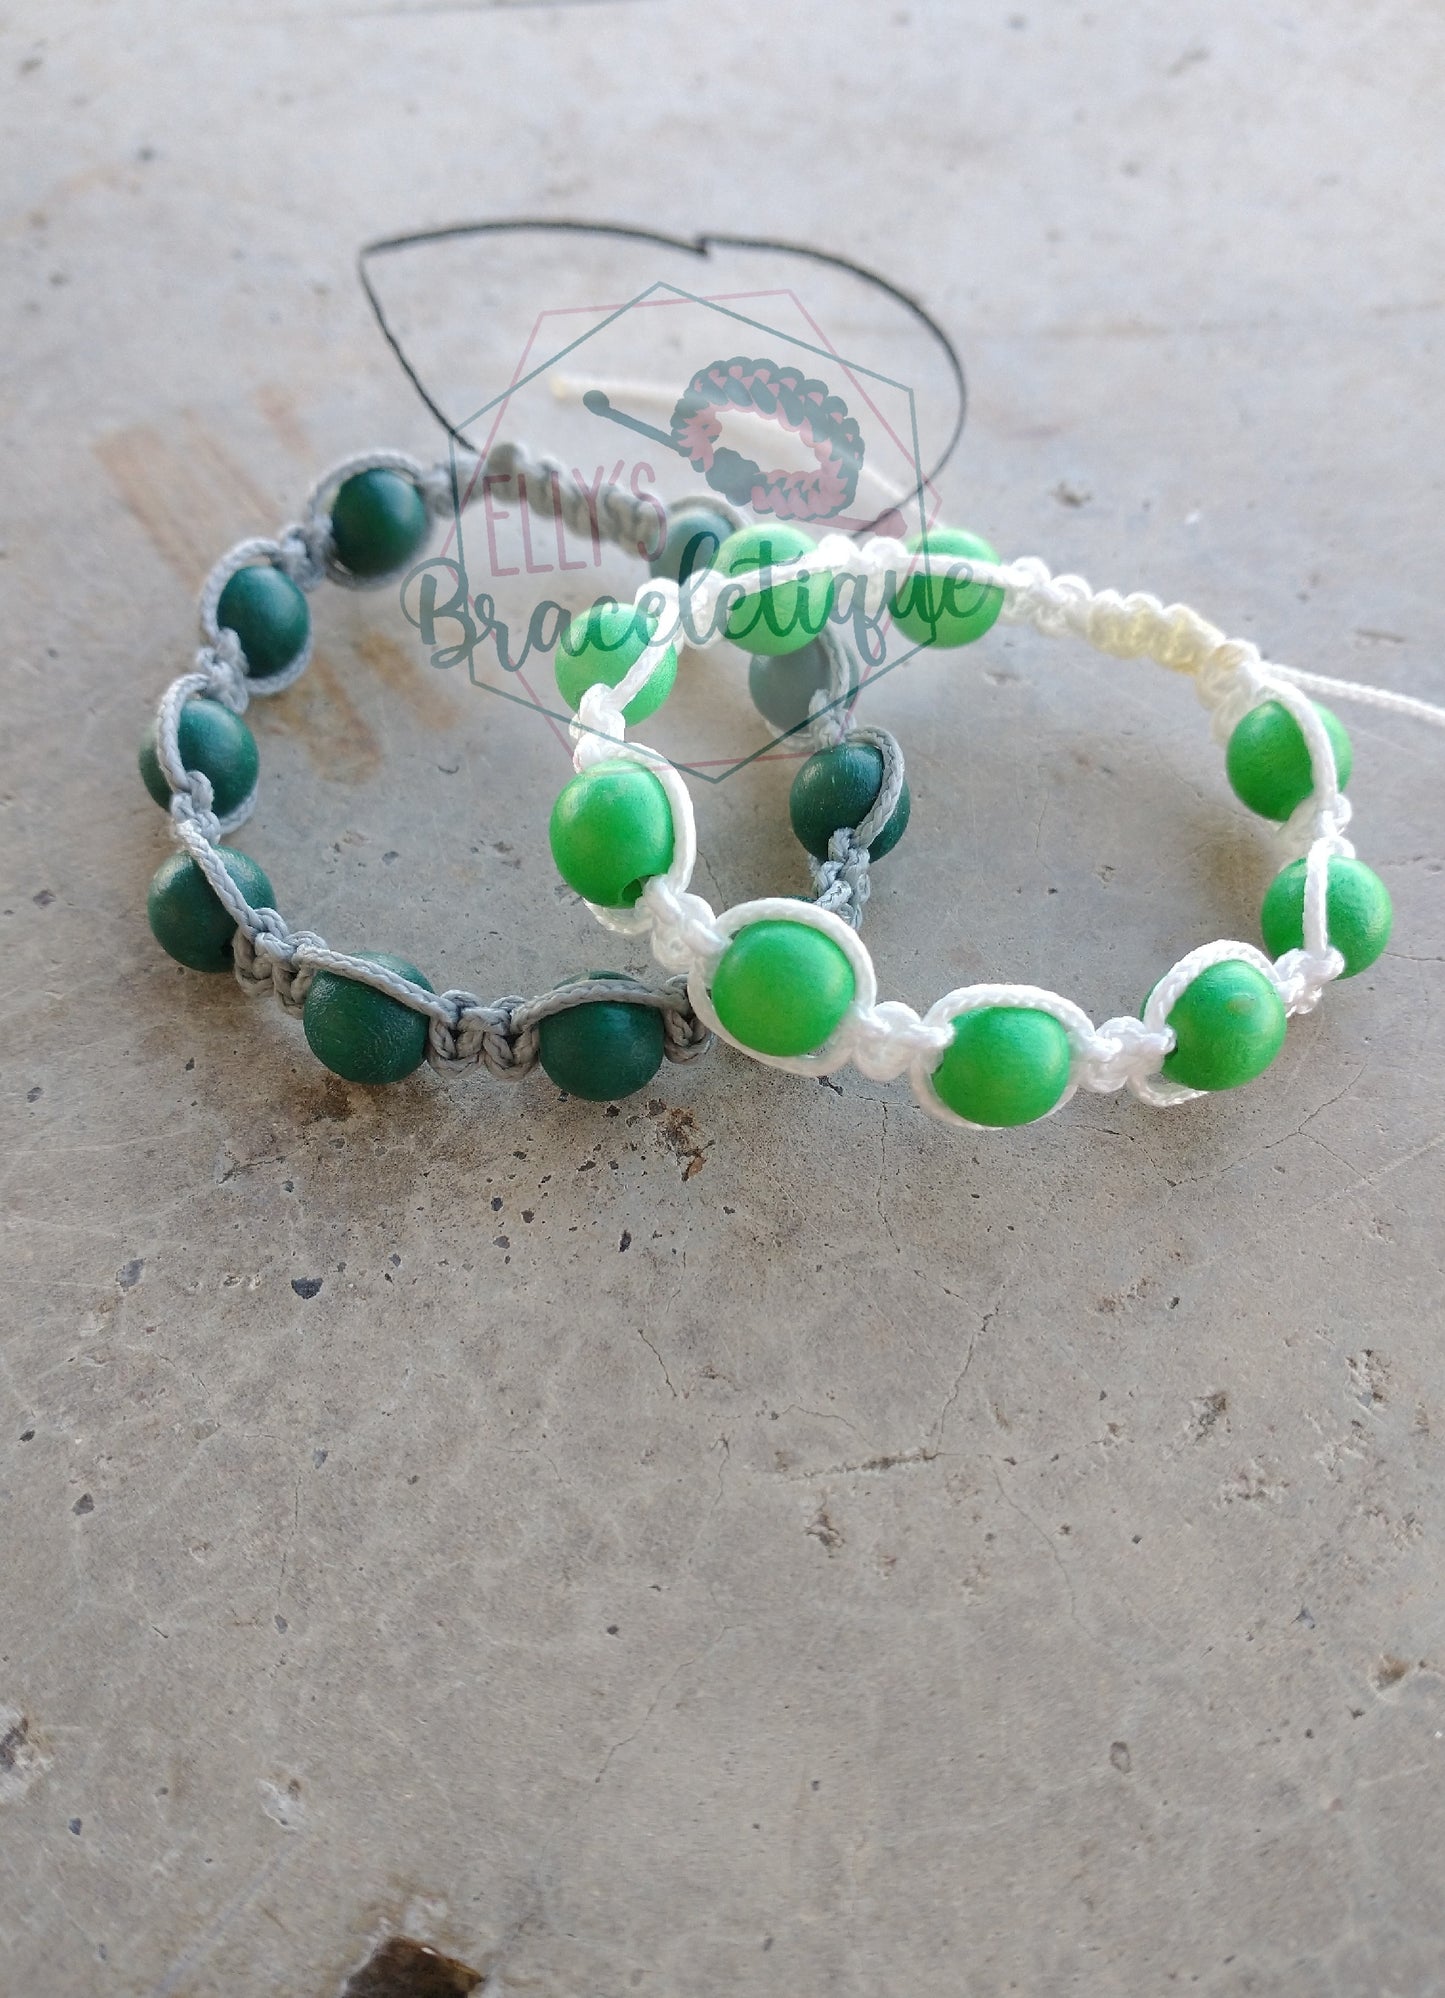 Wear your green bracelet